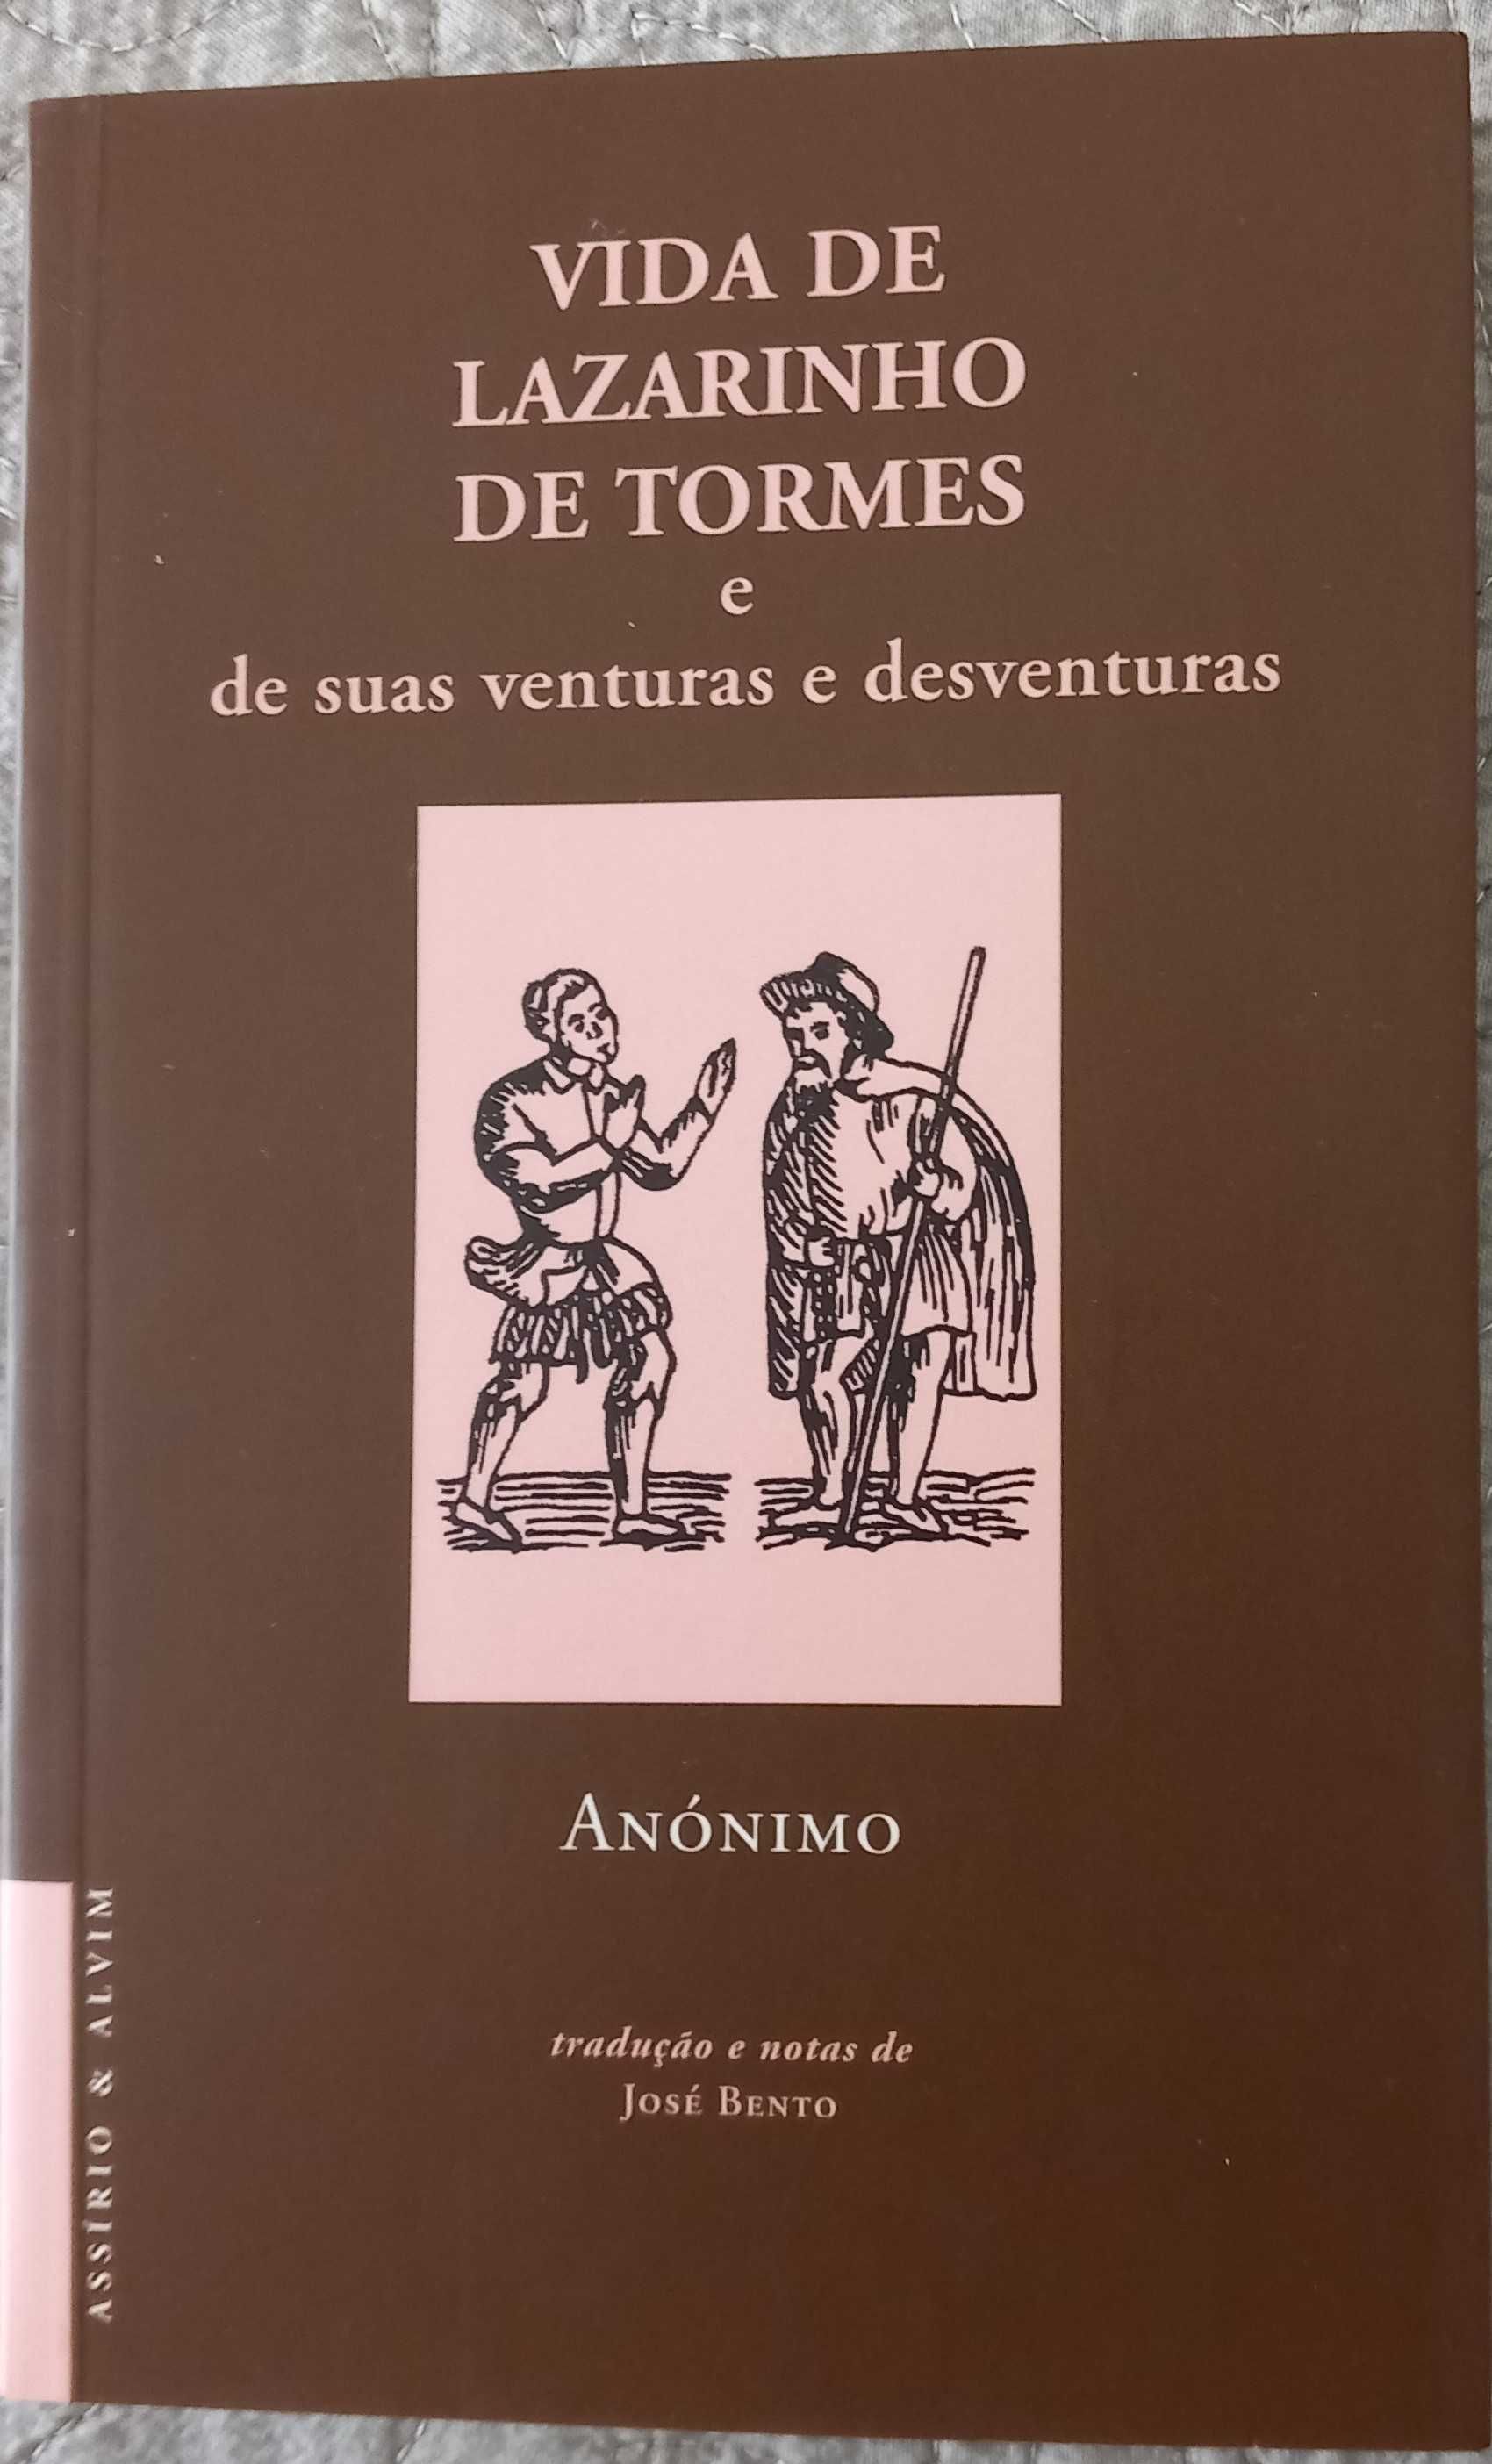 Vida de Lazarinho de Tormes (Assírio & Alvim) trad. José Bento